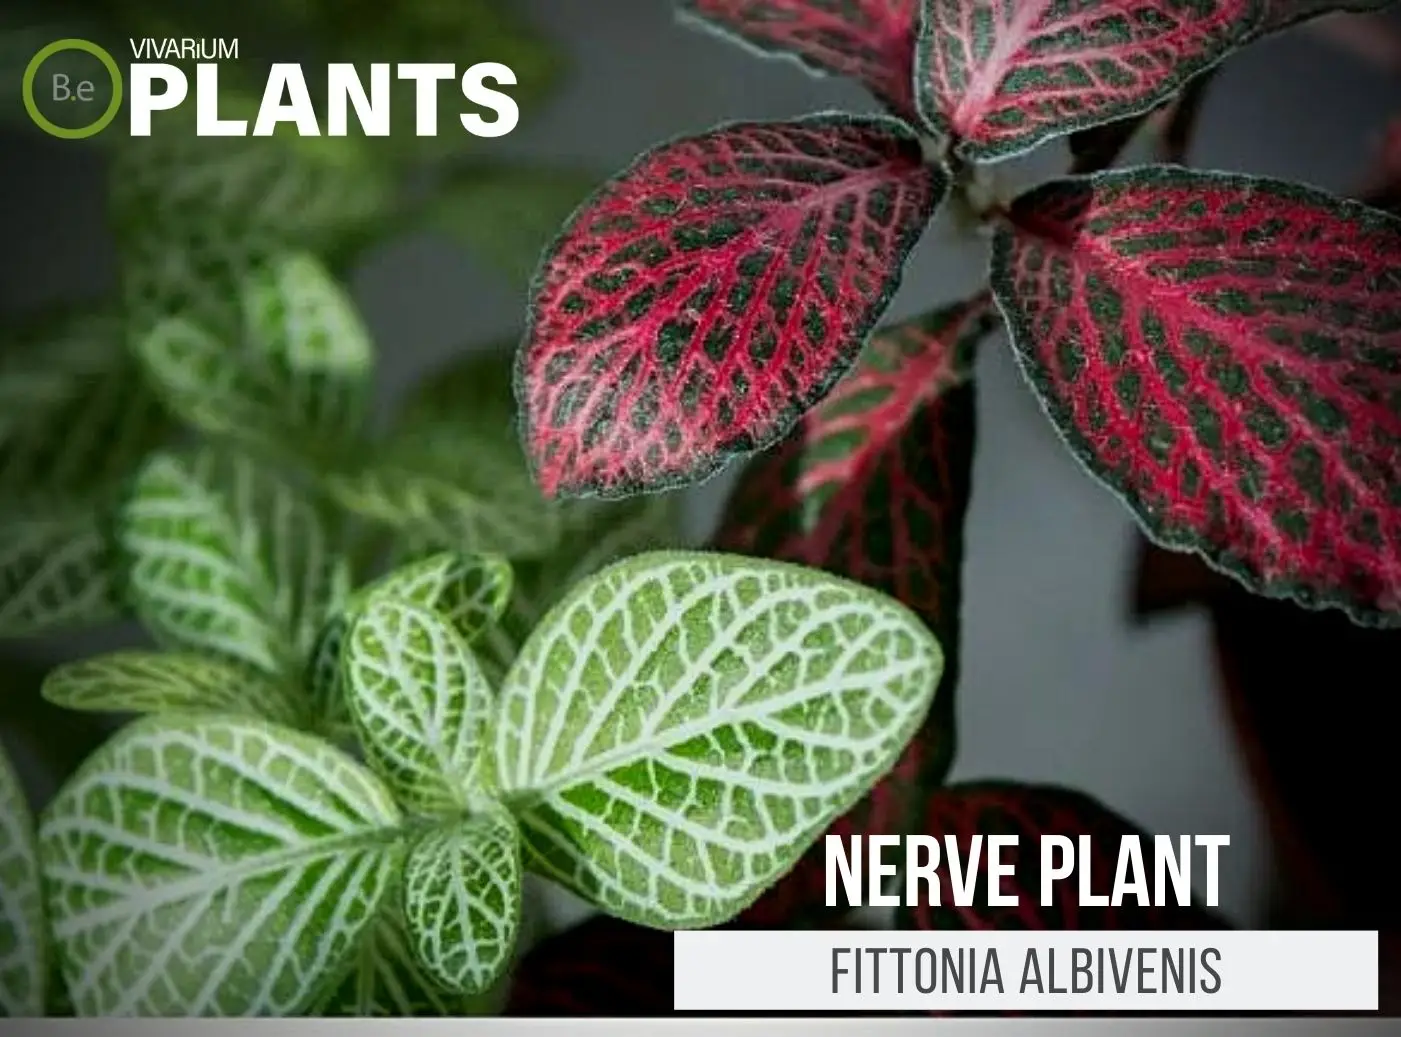 Fittonia albivenis "Nerve Plant" Care Guide | Tropical Terrarium Plants